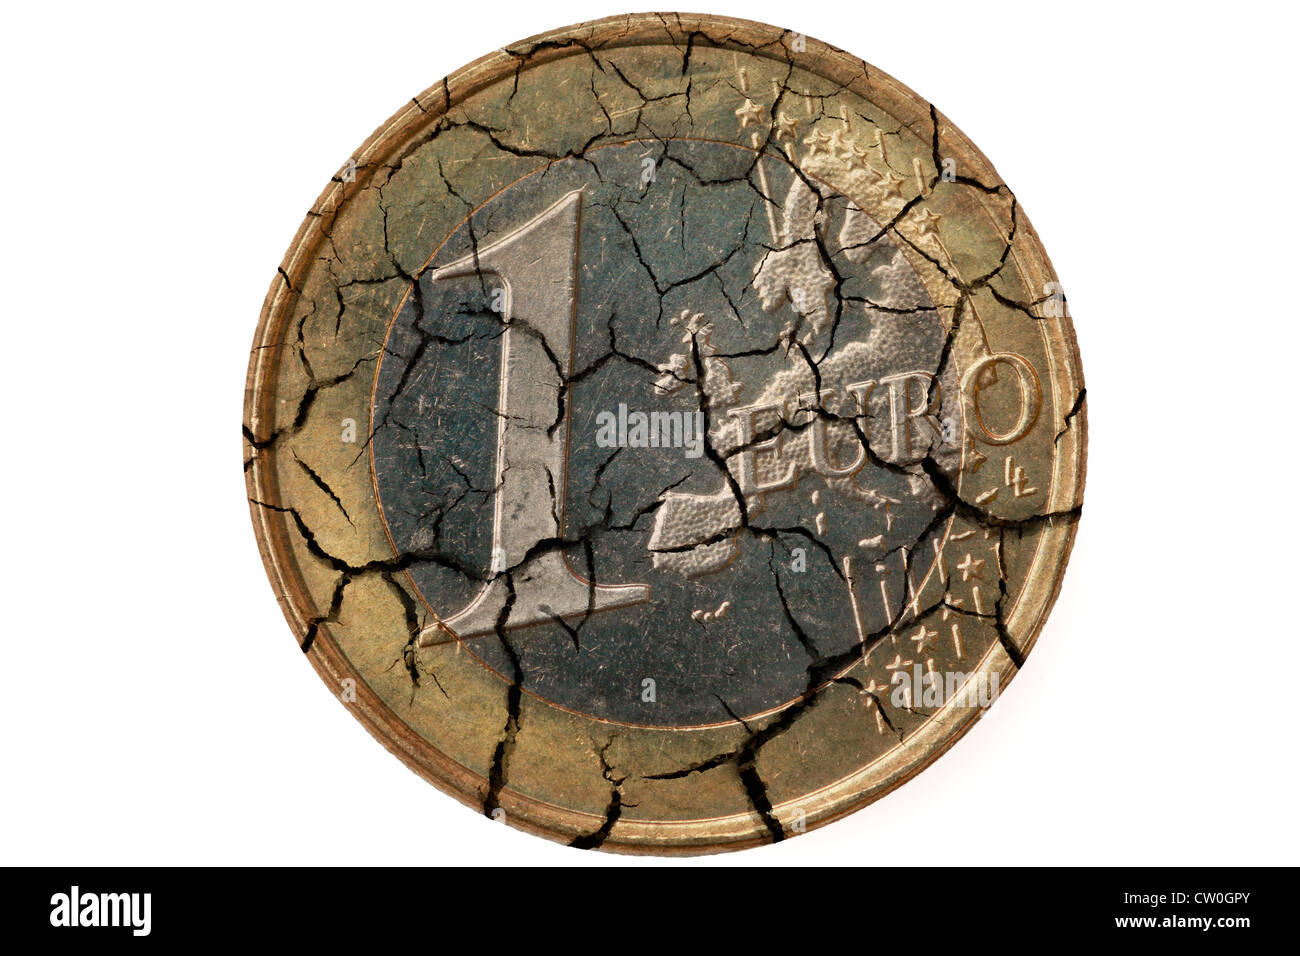 Euro crisis. Euro coin with cracks. Stock Photo